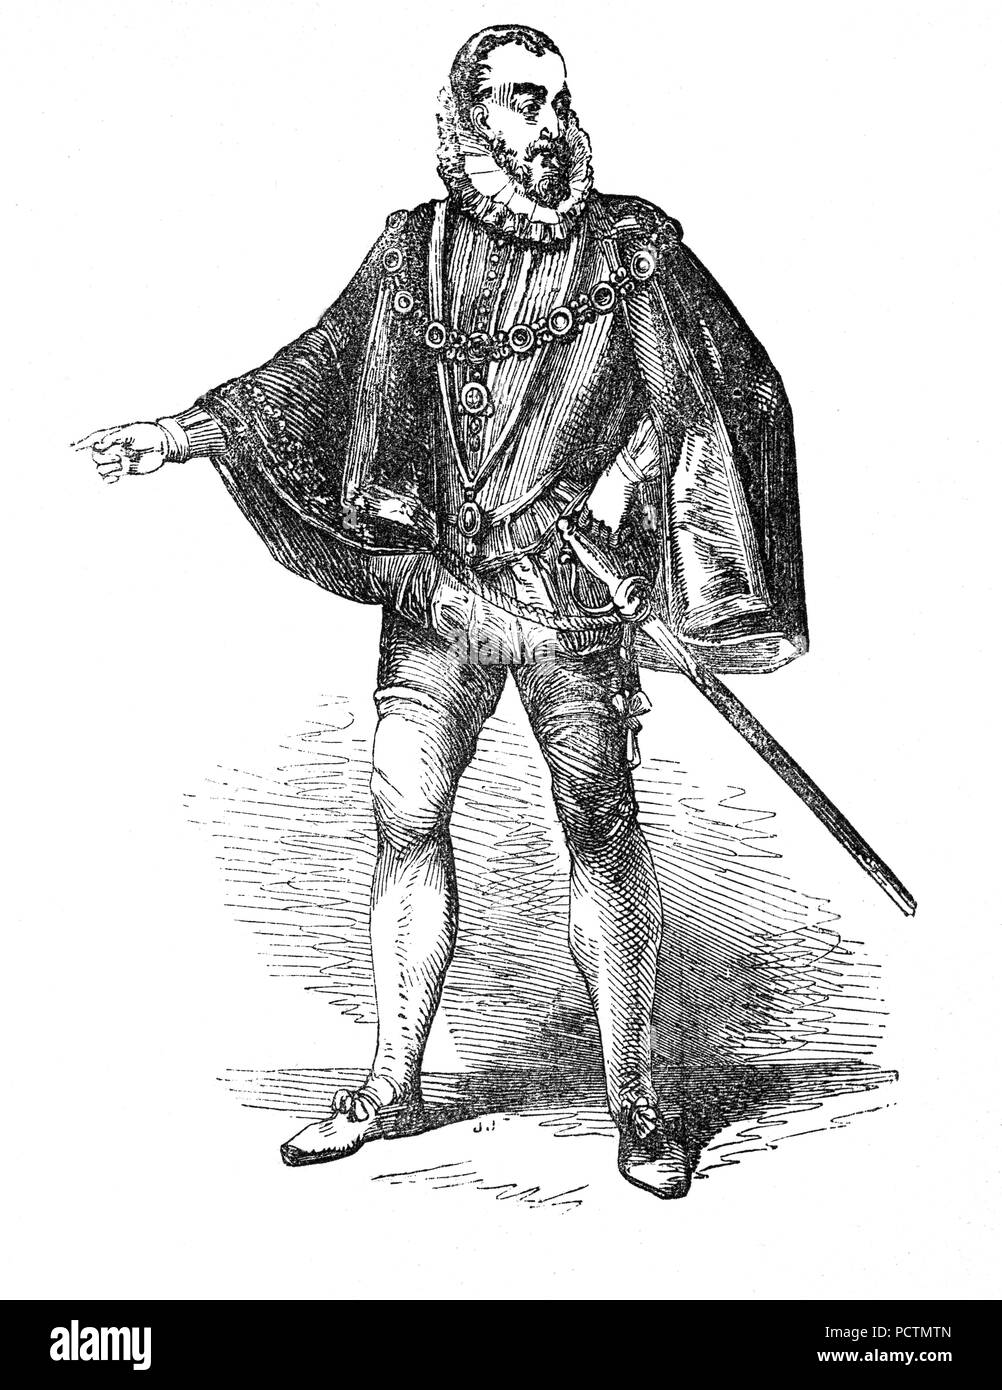 Porträt von Charles Howard, 1. Earl of Nottingham, (1536-1624), bekannt als Howard von Effingham, war ein englischer Staatsmann und Lord High Admiral Unter Elizabeth I. und James I. war er Kommandeur der englischen Truppen während der Kämpfe gegen die spanische Armada und war hauptsächlich verantwortlich nach Francis Drake für den Sieg, daß England, von der Invasion der Spanischen Reich gespeichert. Stockfoto